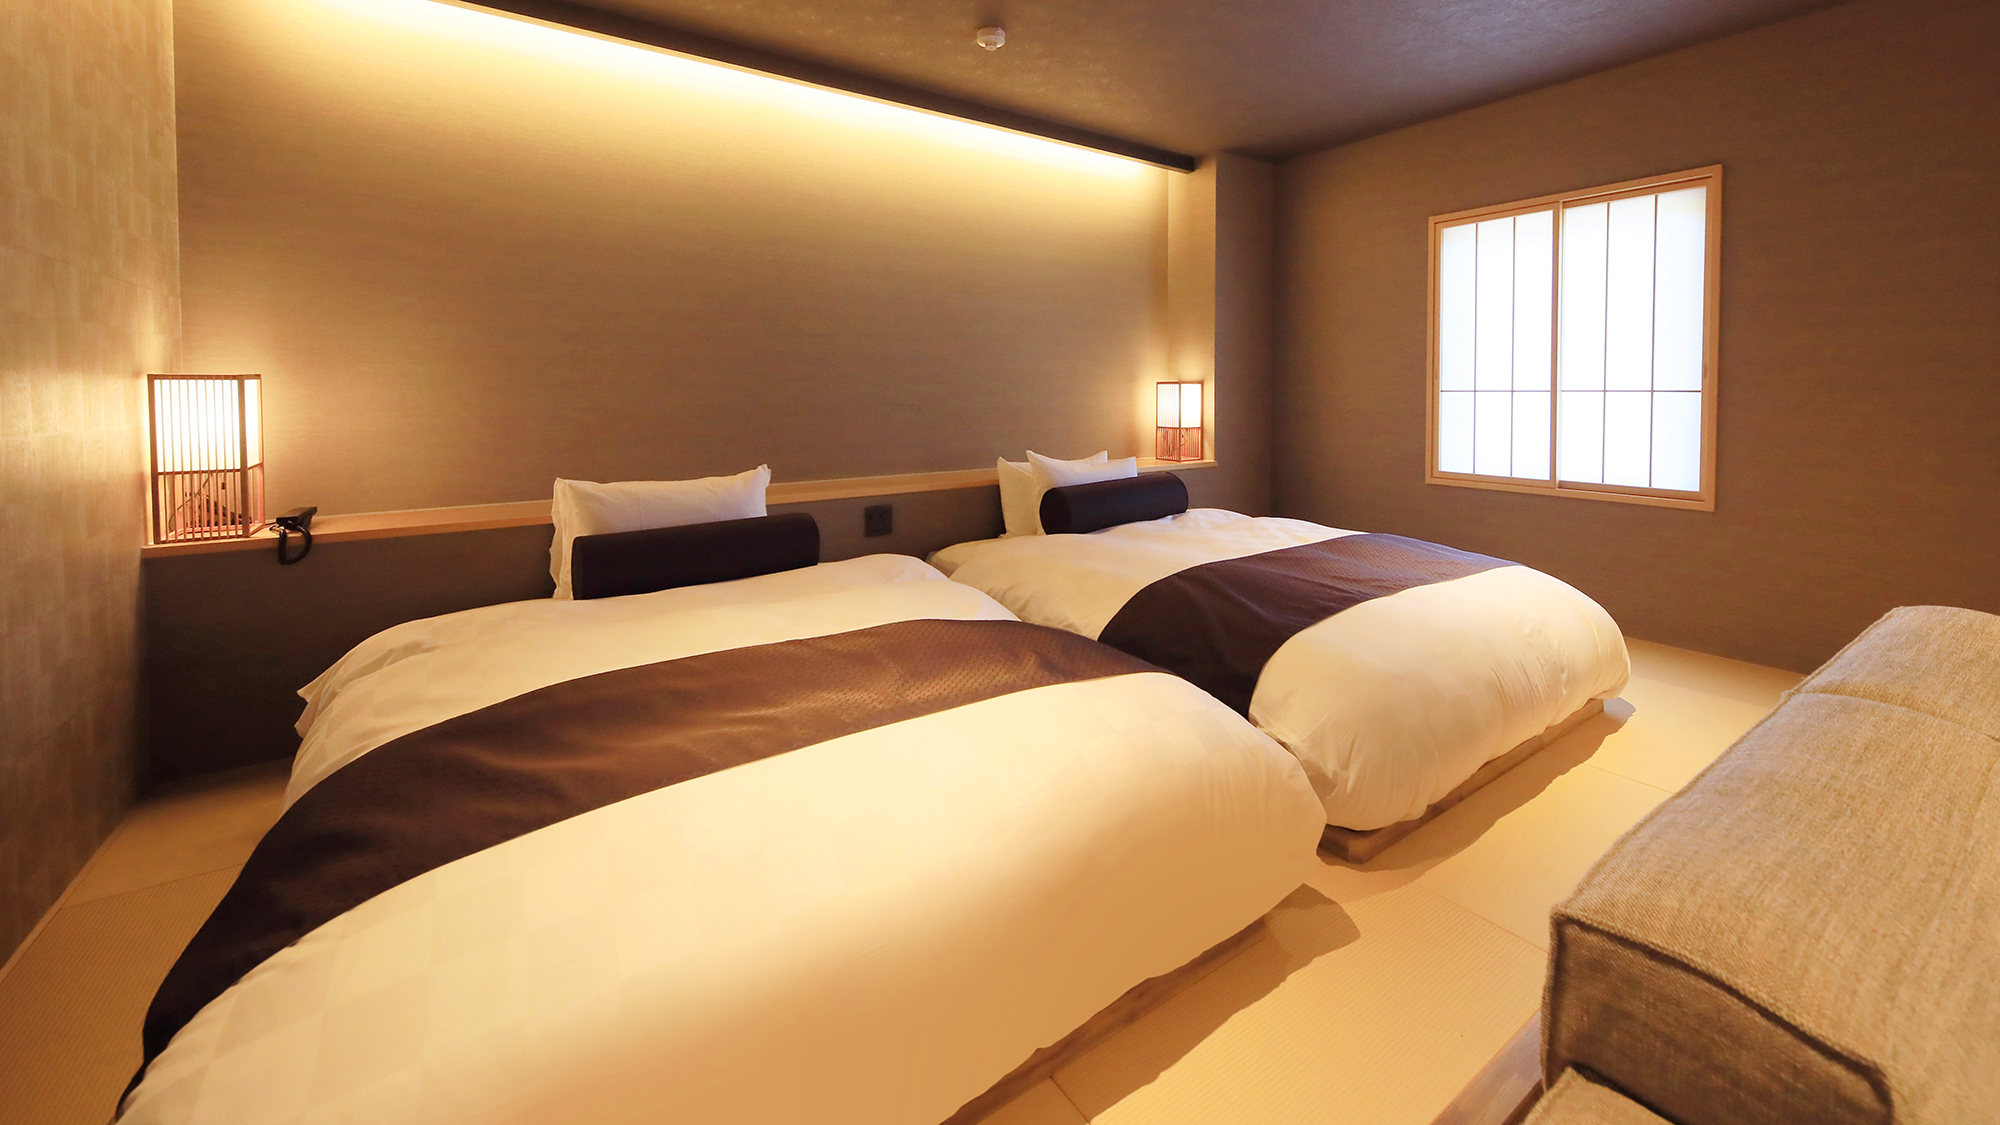 【スーペリアスイート】140cm幅のゆったりしたベッドと寛ぎのリビングエリアを備えた快適空間